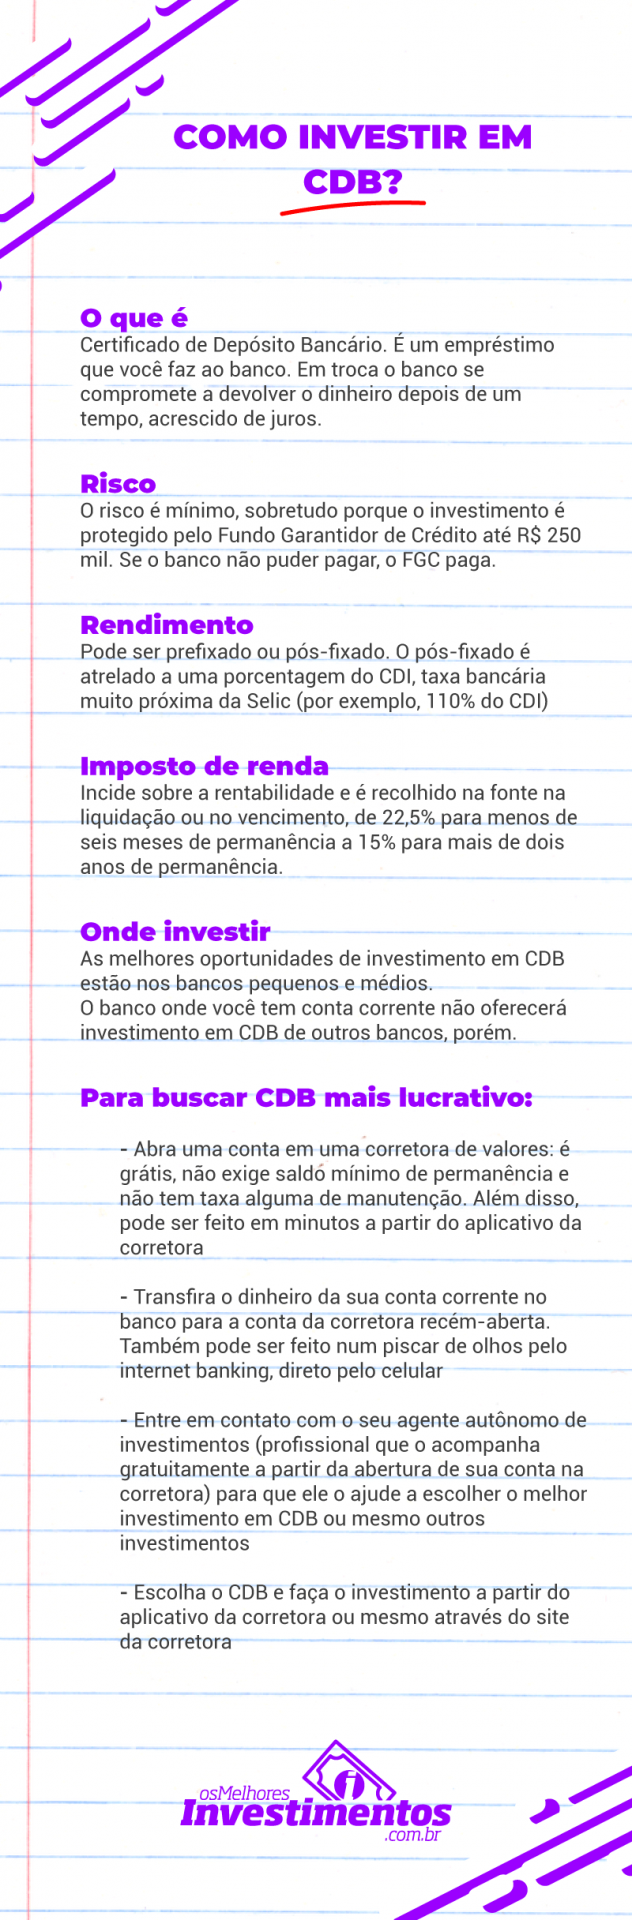 Investimentos CDB - Os Melhores Investimentos - Infográfico